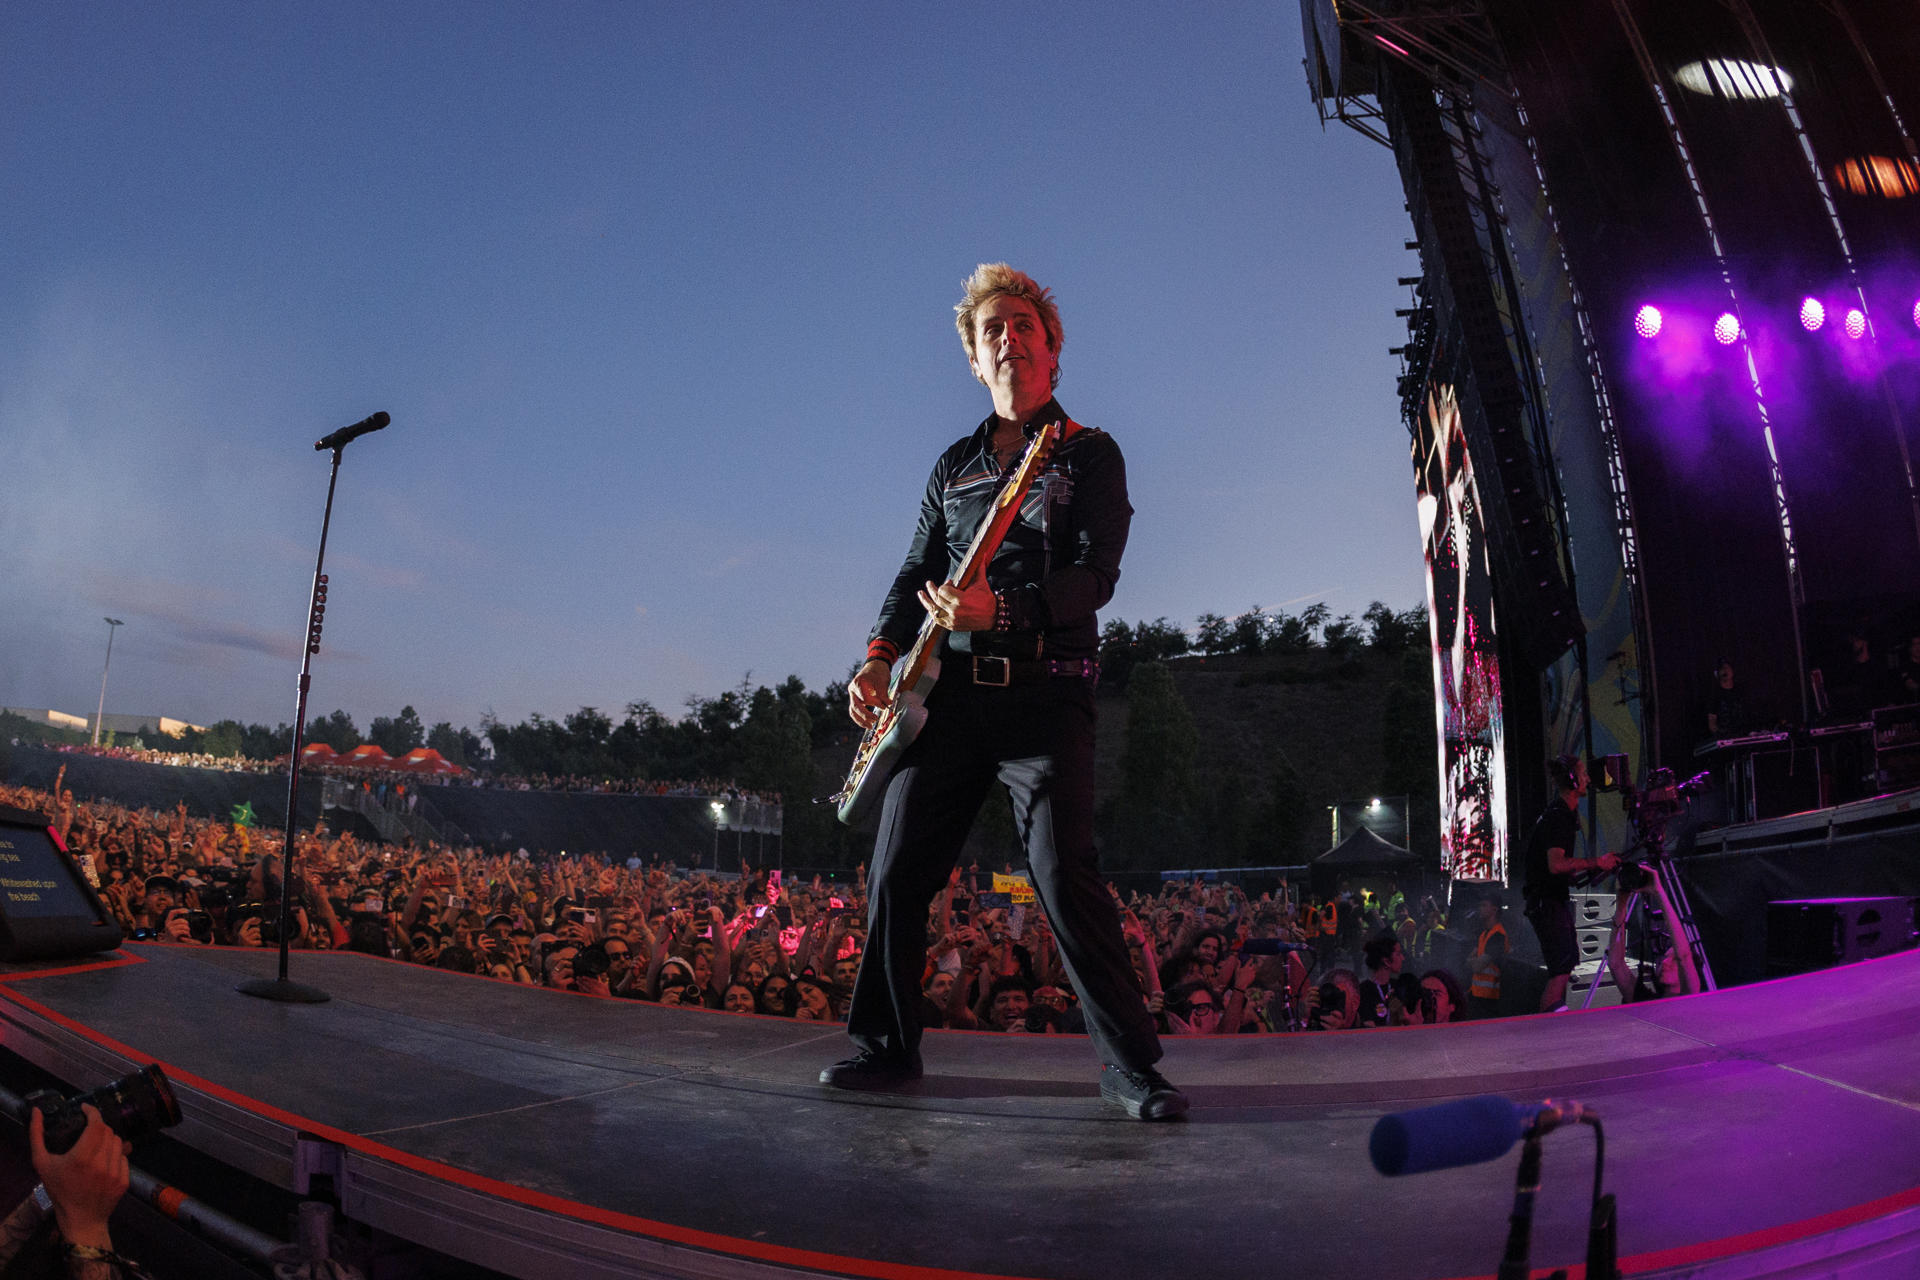 La banda estadounidense Green Day durante su actuación hoy sábado en el Festival Road to Rio Babel que se celebra en la Caja Mágica de Madrid. EFE / Rodrigo Jiménez.
